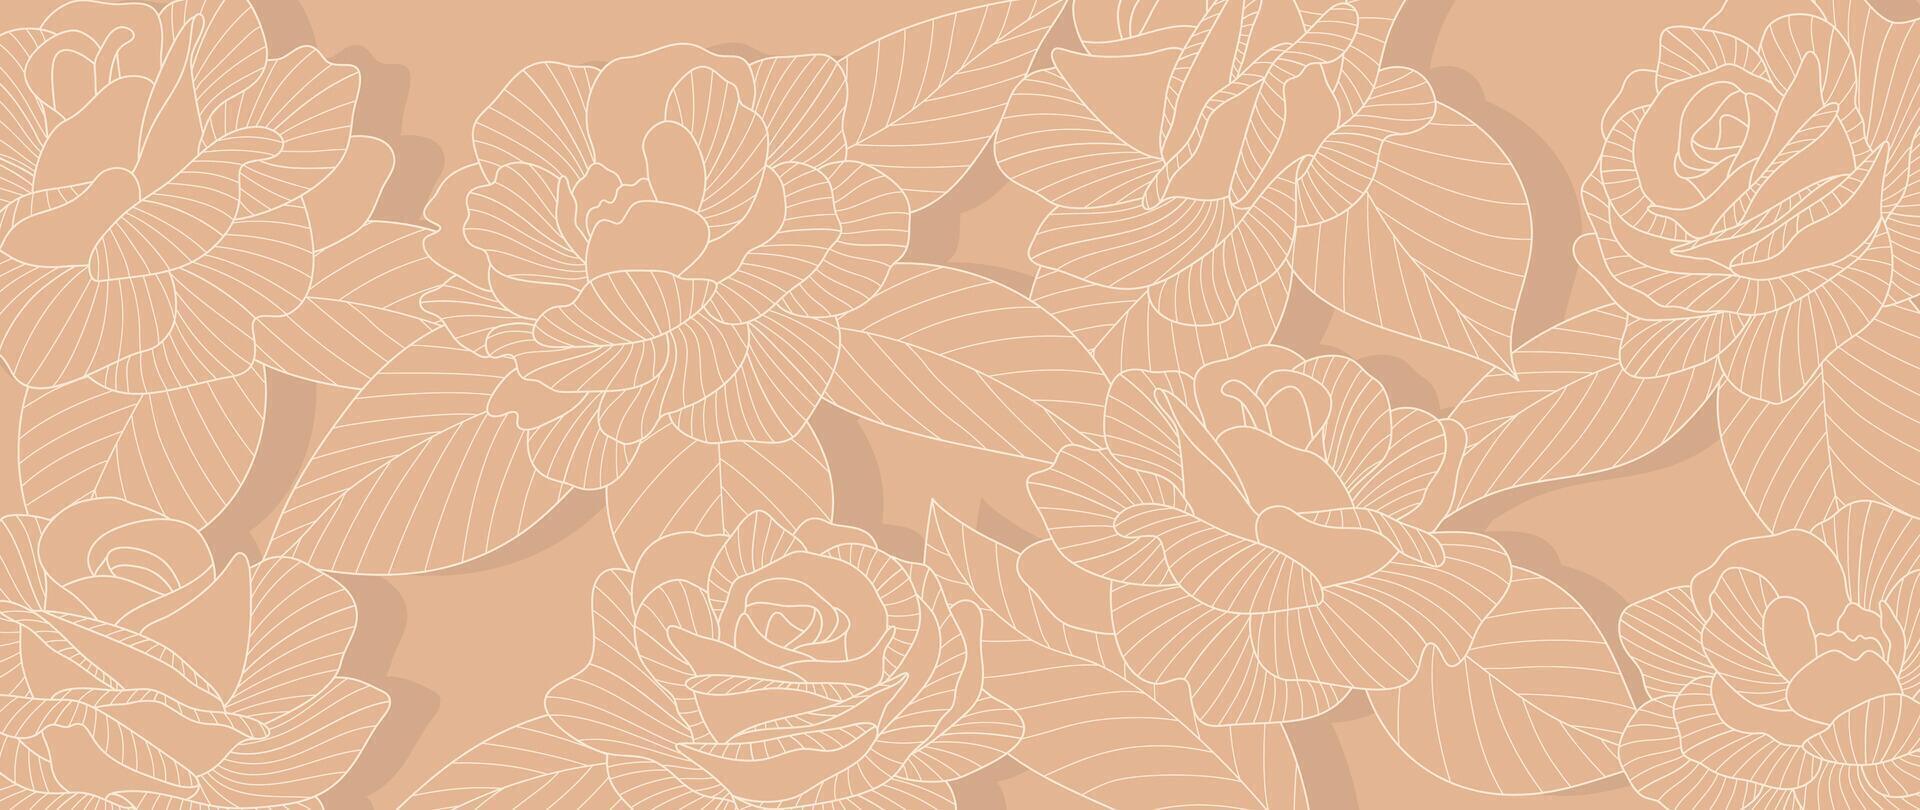 Luxus Rose Blume Linie Kunst Hintergrund Vektor. natürlich botanisch elegant Blume mit Weiß Linie Kunst. Design Illustration zum Dekoration, Mauer Dekor, Hintergrund, Abdeckung, Banner, Poster, Karte. vektor